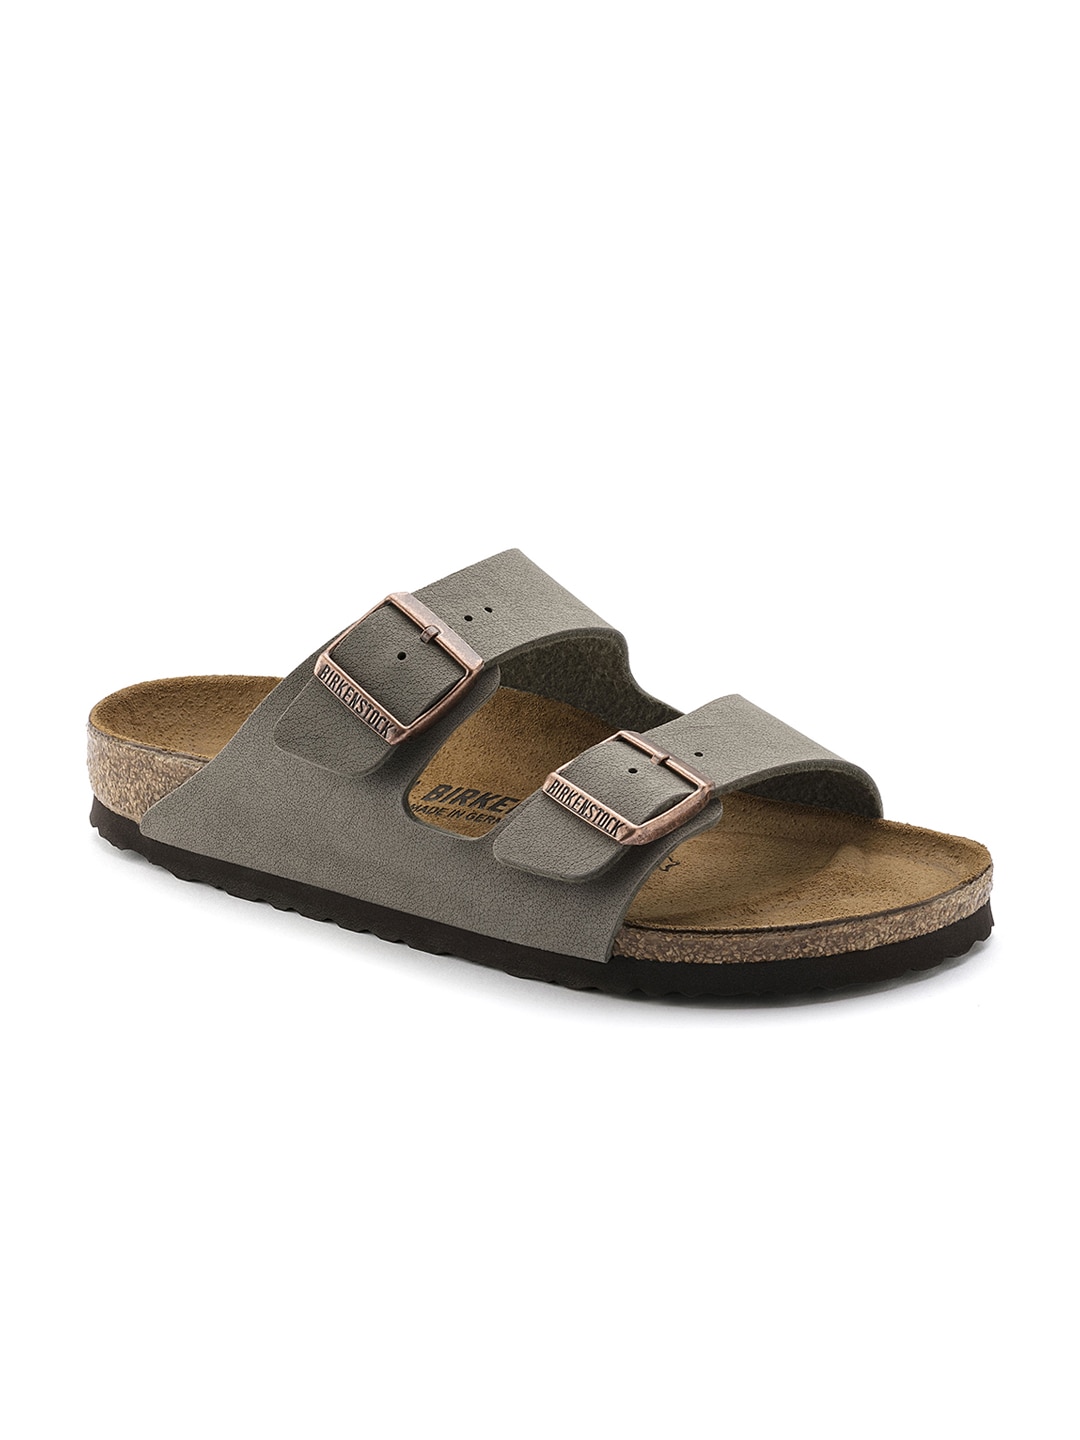 Birkenstock Unisex Grey & Brown Arizona Birko-Flor Nubuck Comfort Narrow Width Sandals